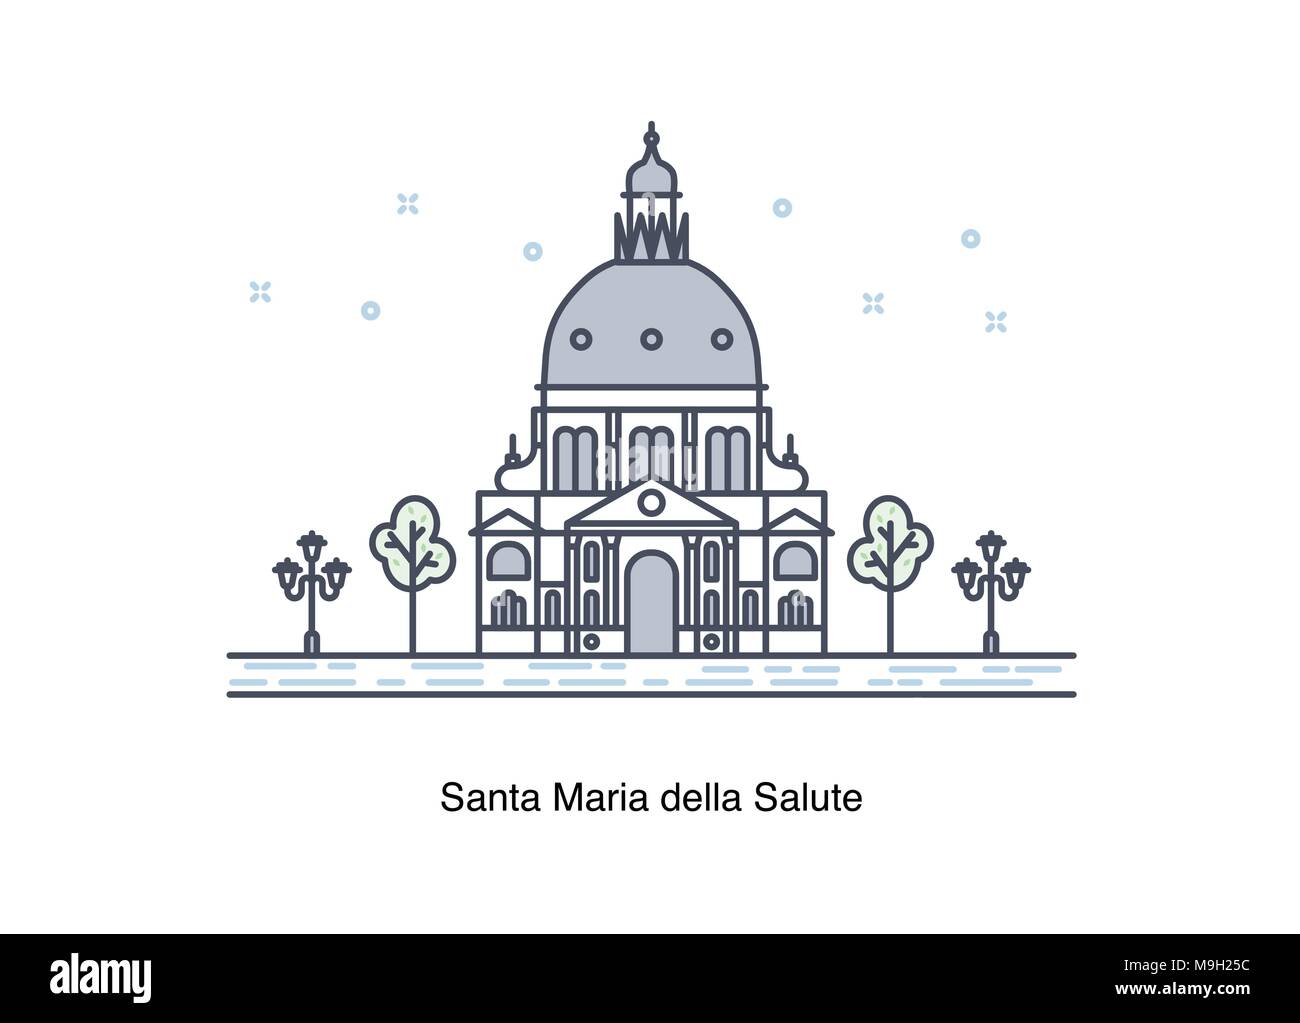 Vector line illustration of Santa Maria della Salute, Venice, Italy. Stock Vector